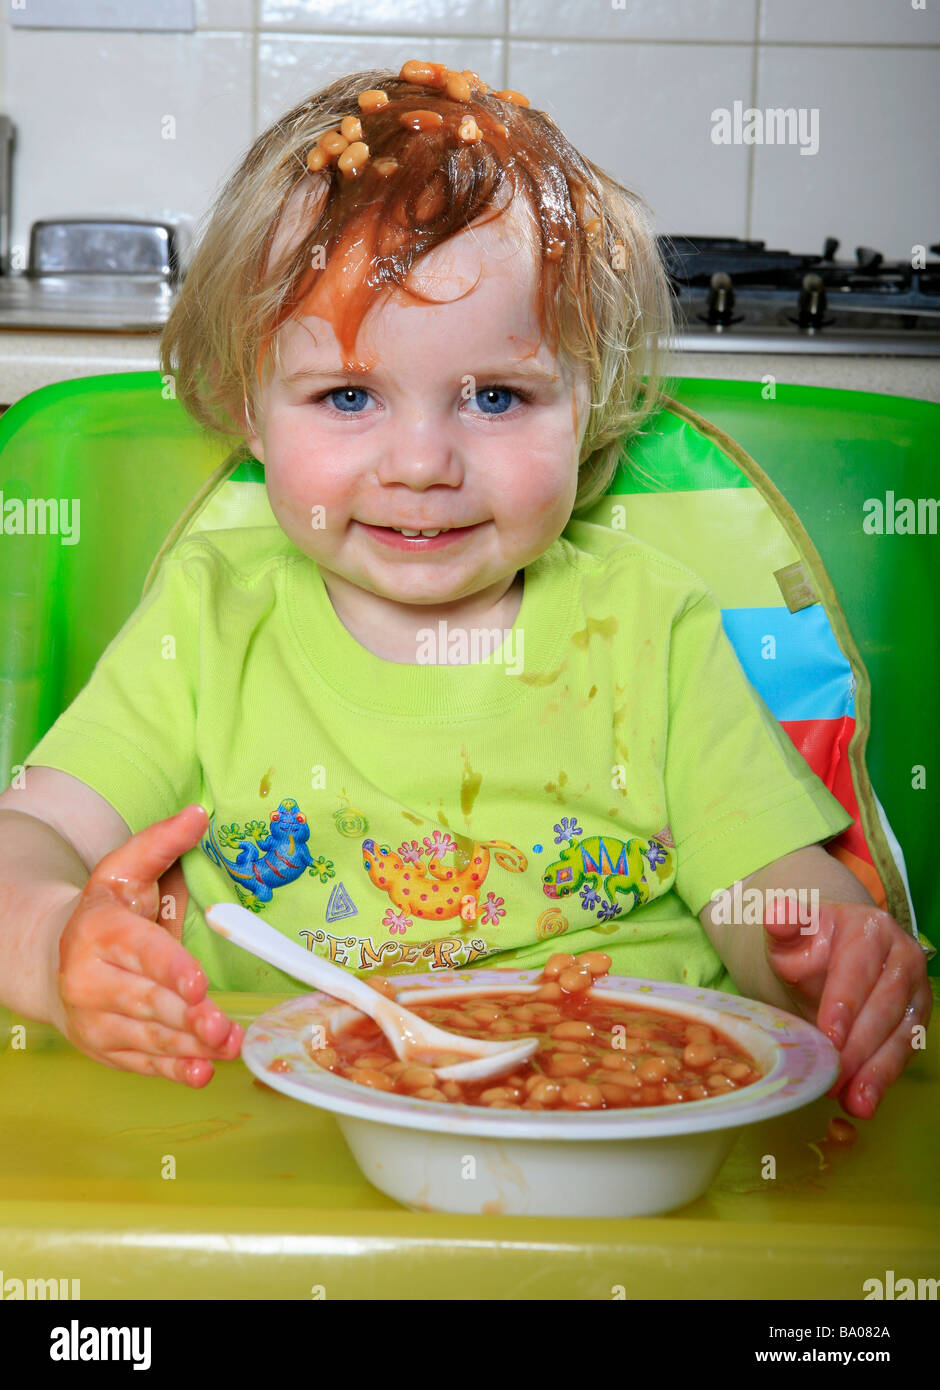 Bambino con fagioli al forno sulla testa sorridente. bambino mangiare i fagioli il bambino nel seggiolino bambino in cucina Foto Stock